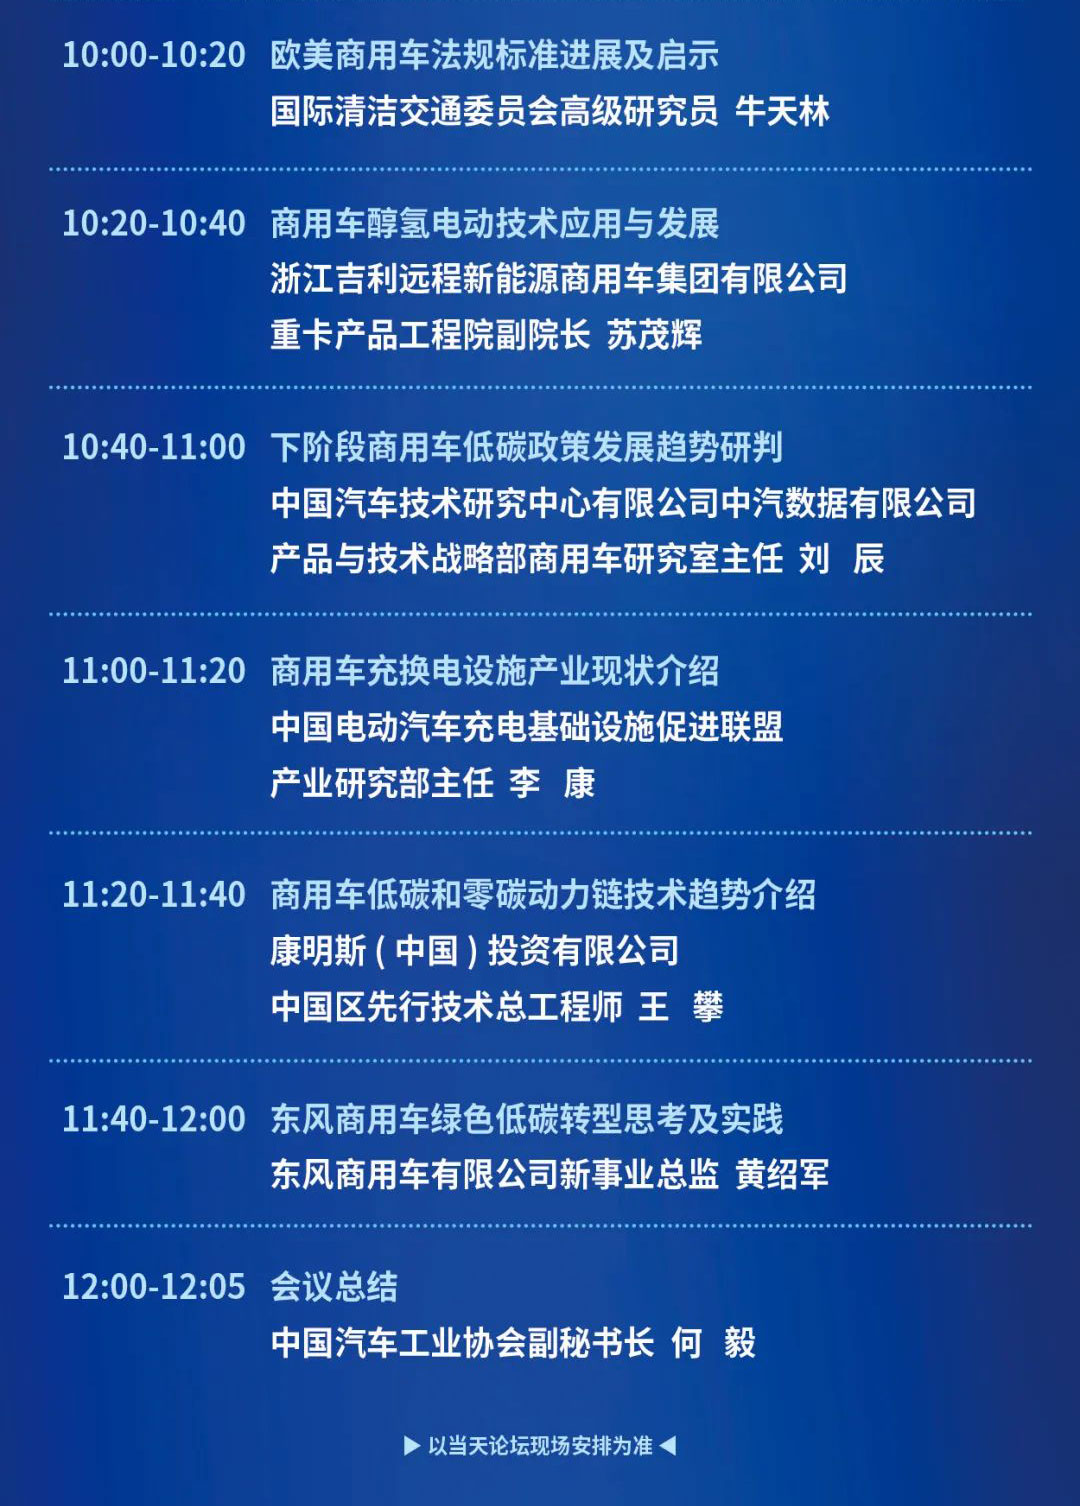 中国商用车论坛会议日程